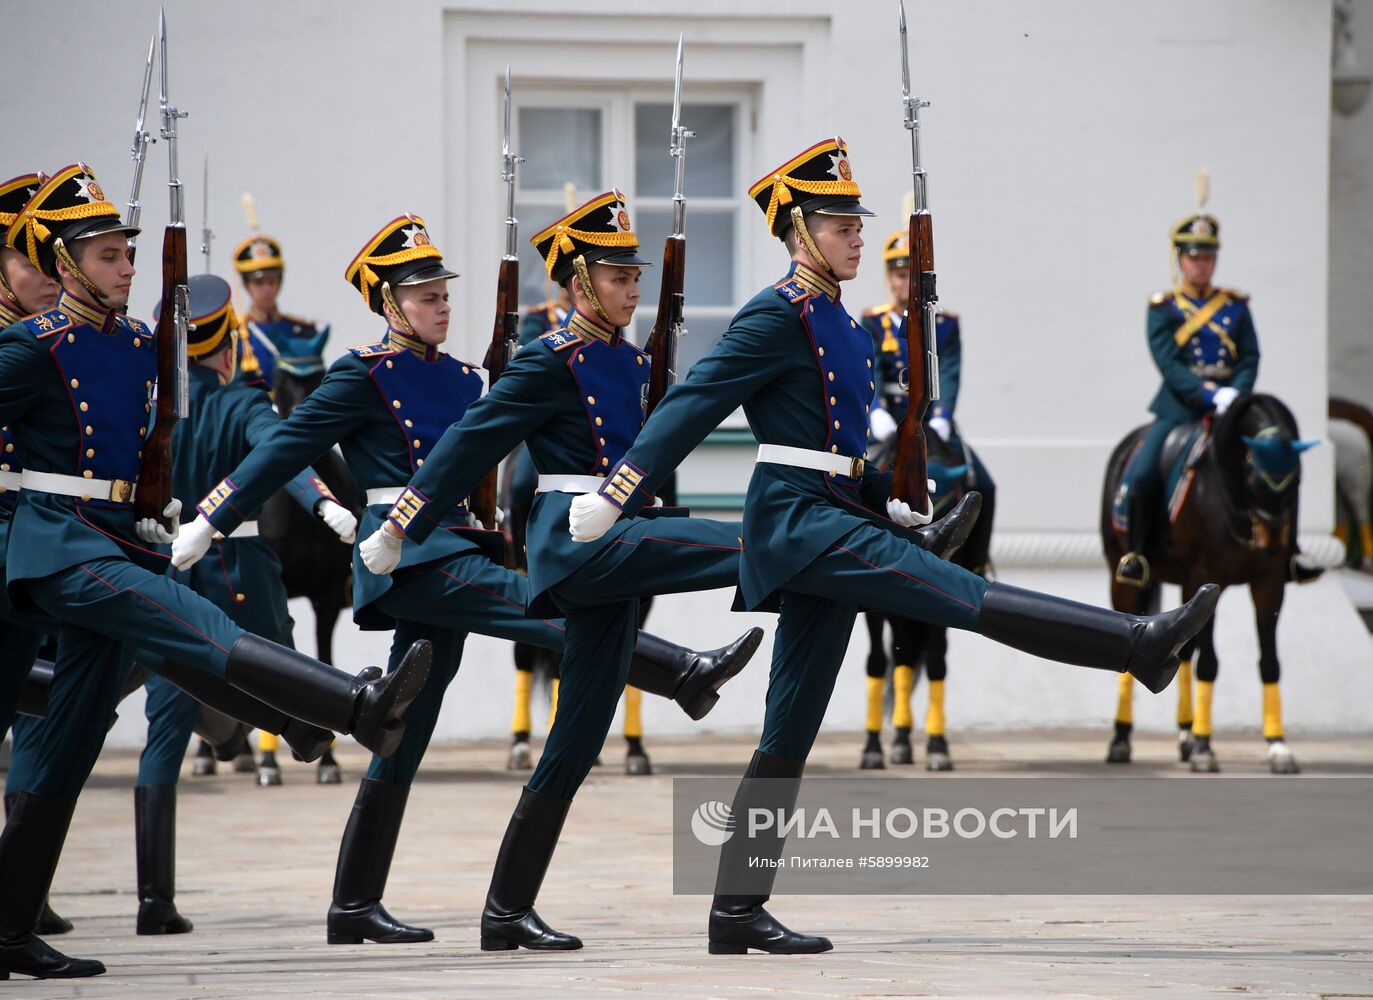 Развод караулов Президентского полка с участием юных всадников